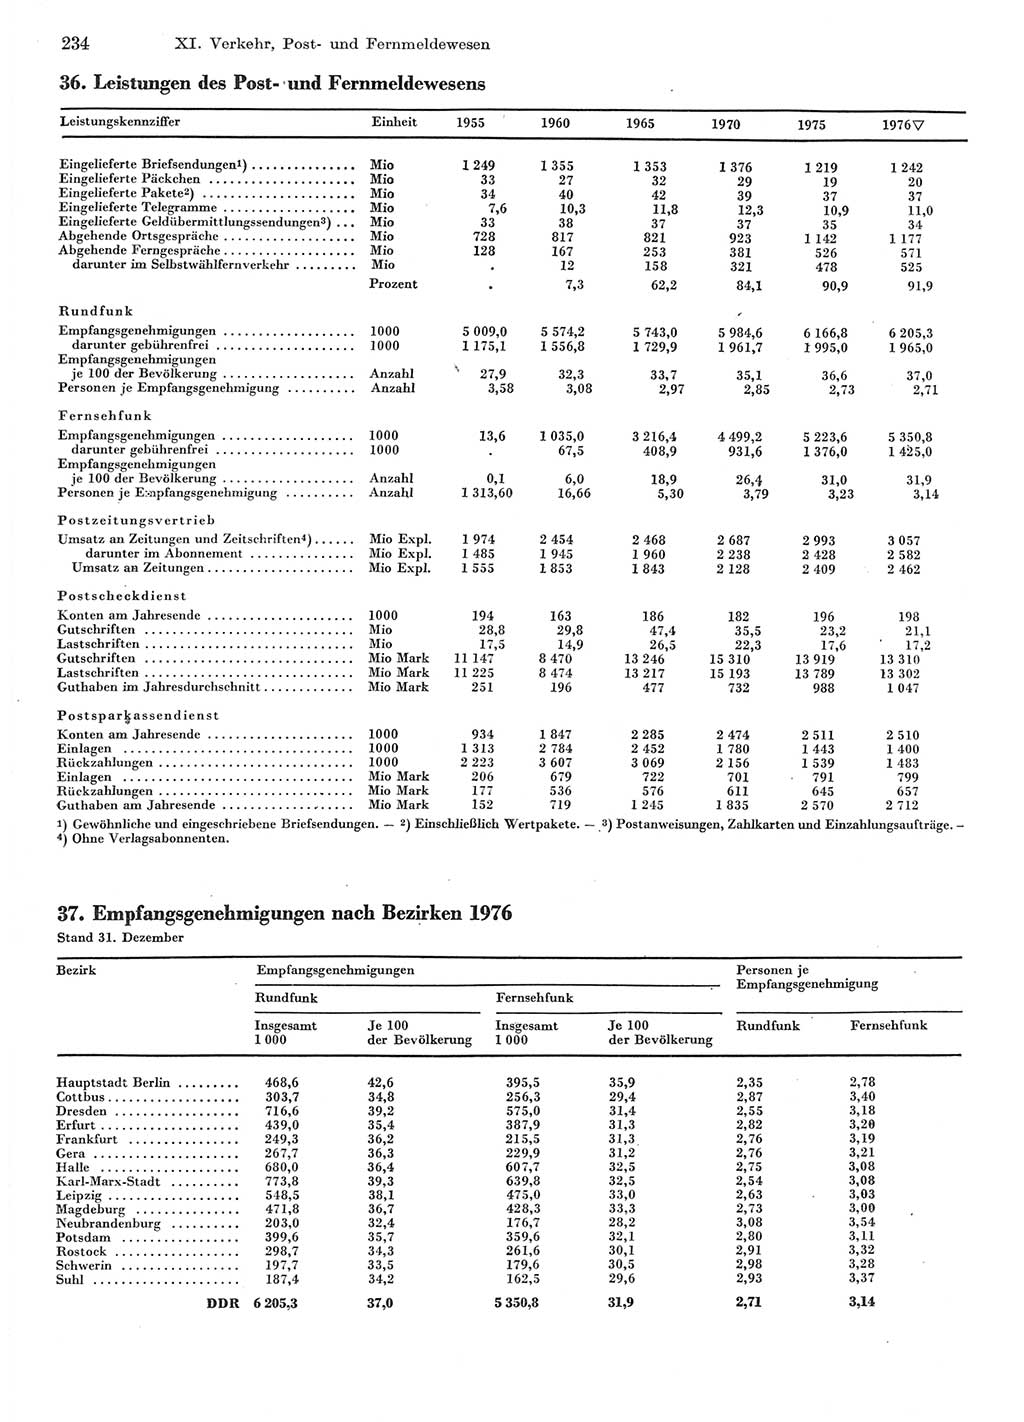 Statistisches Jahrbuch der Deutschen Demokratischen Republik (DDR) 1977, Seite 234 (Stat. Jb. DDR 1977, S. 234)